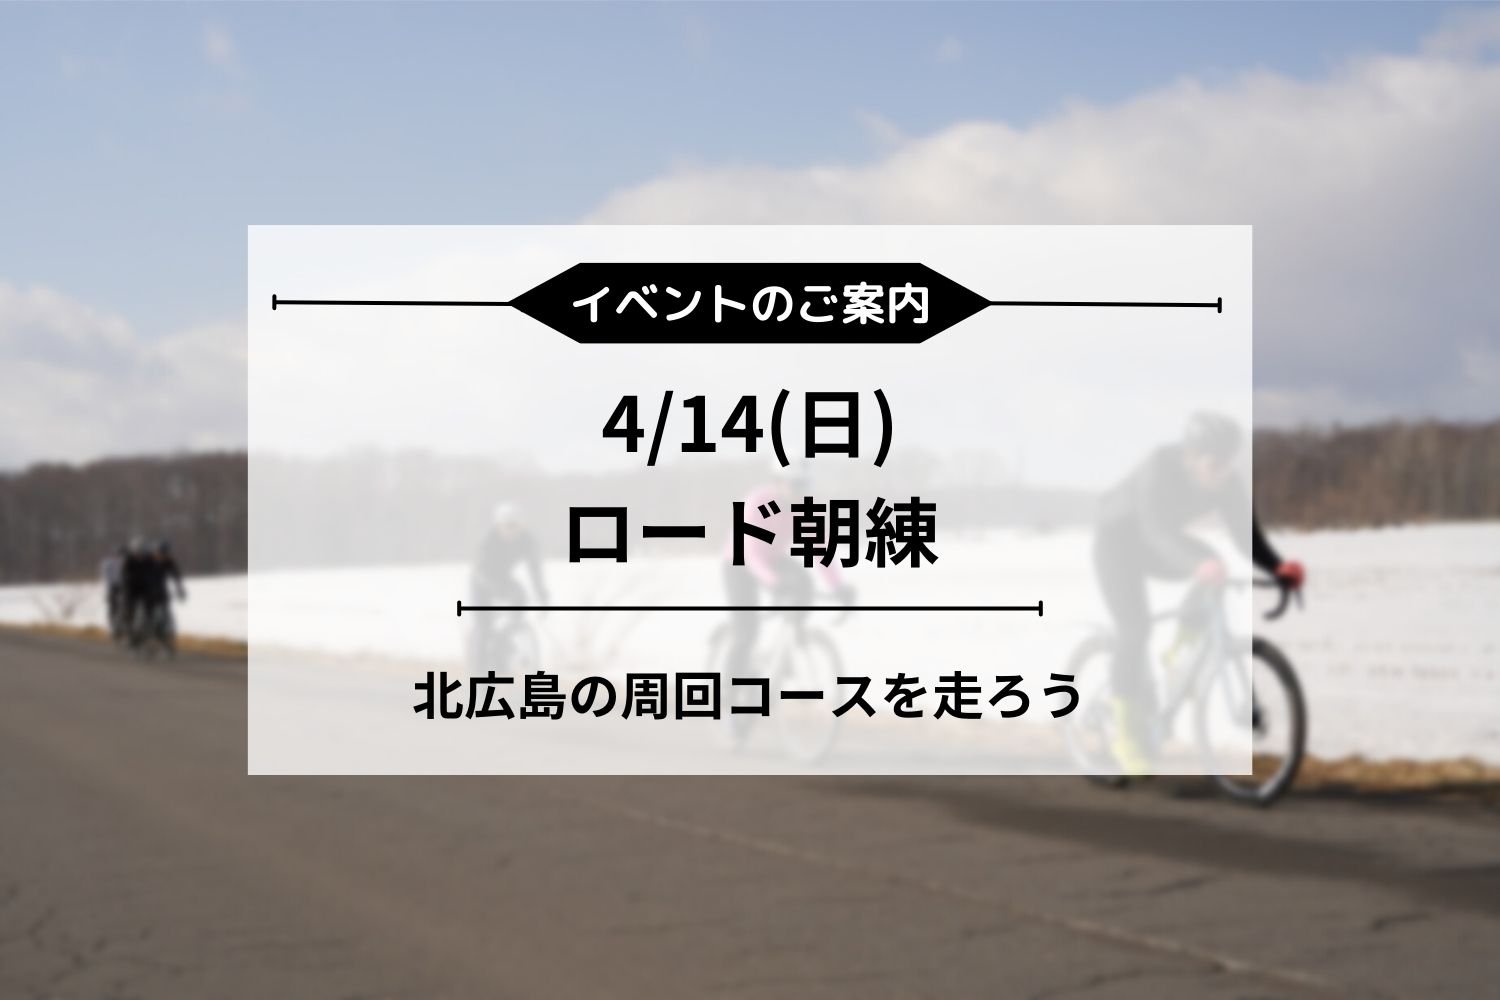 4/14(日) 朝練ロードライド開催